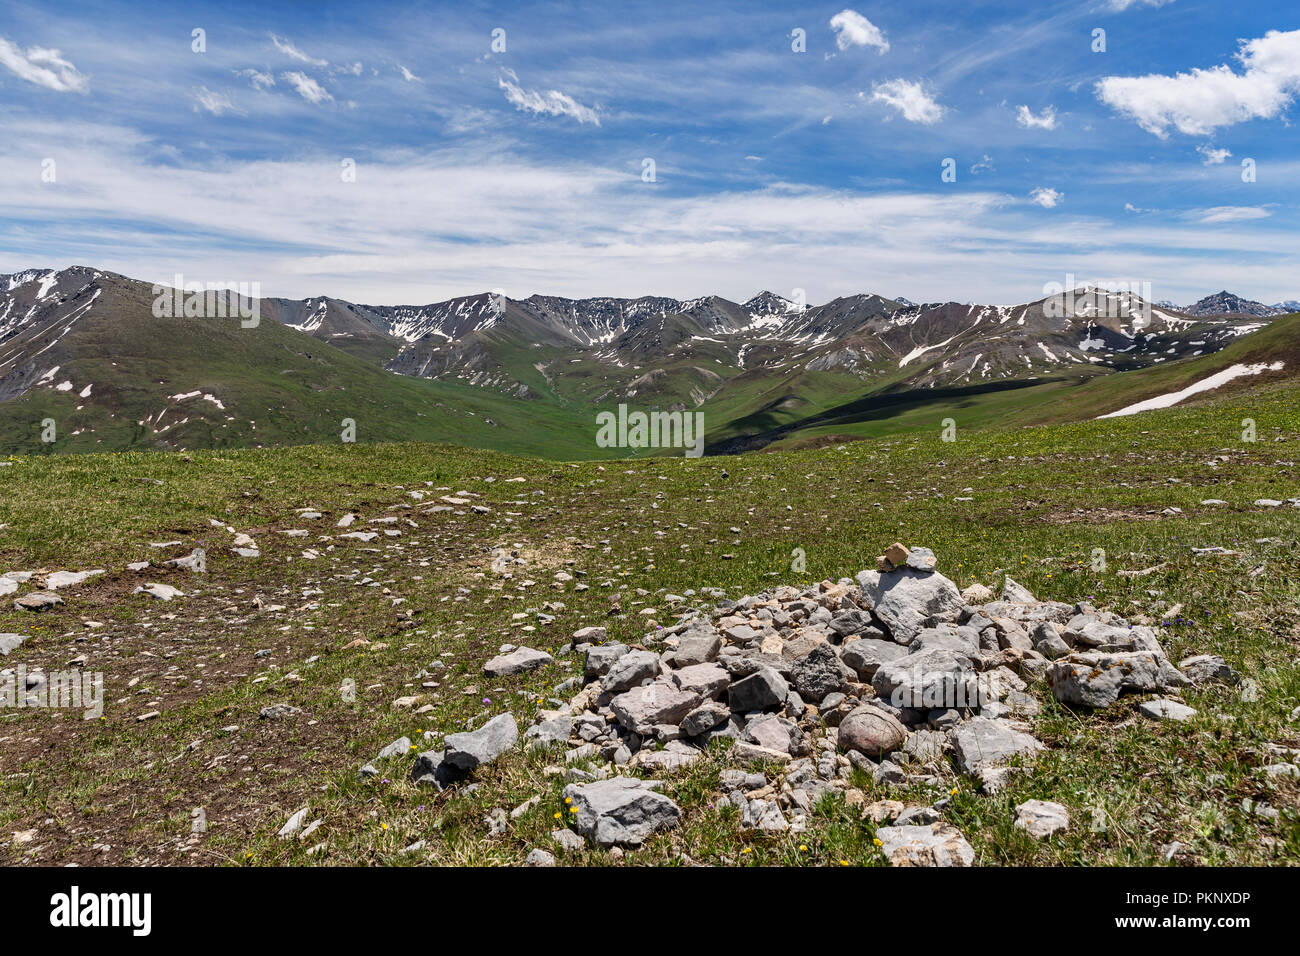 Foothills of Terskey Ala-Too mountain range as seen from Anvar Pass, Keskenkyia Loop trek, Jyrgalan, Kyrgyzstan Stock Photo